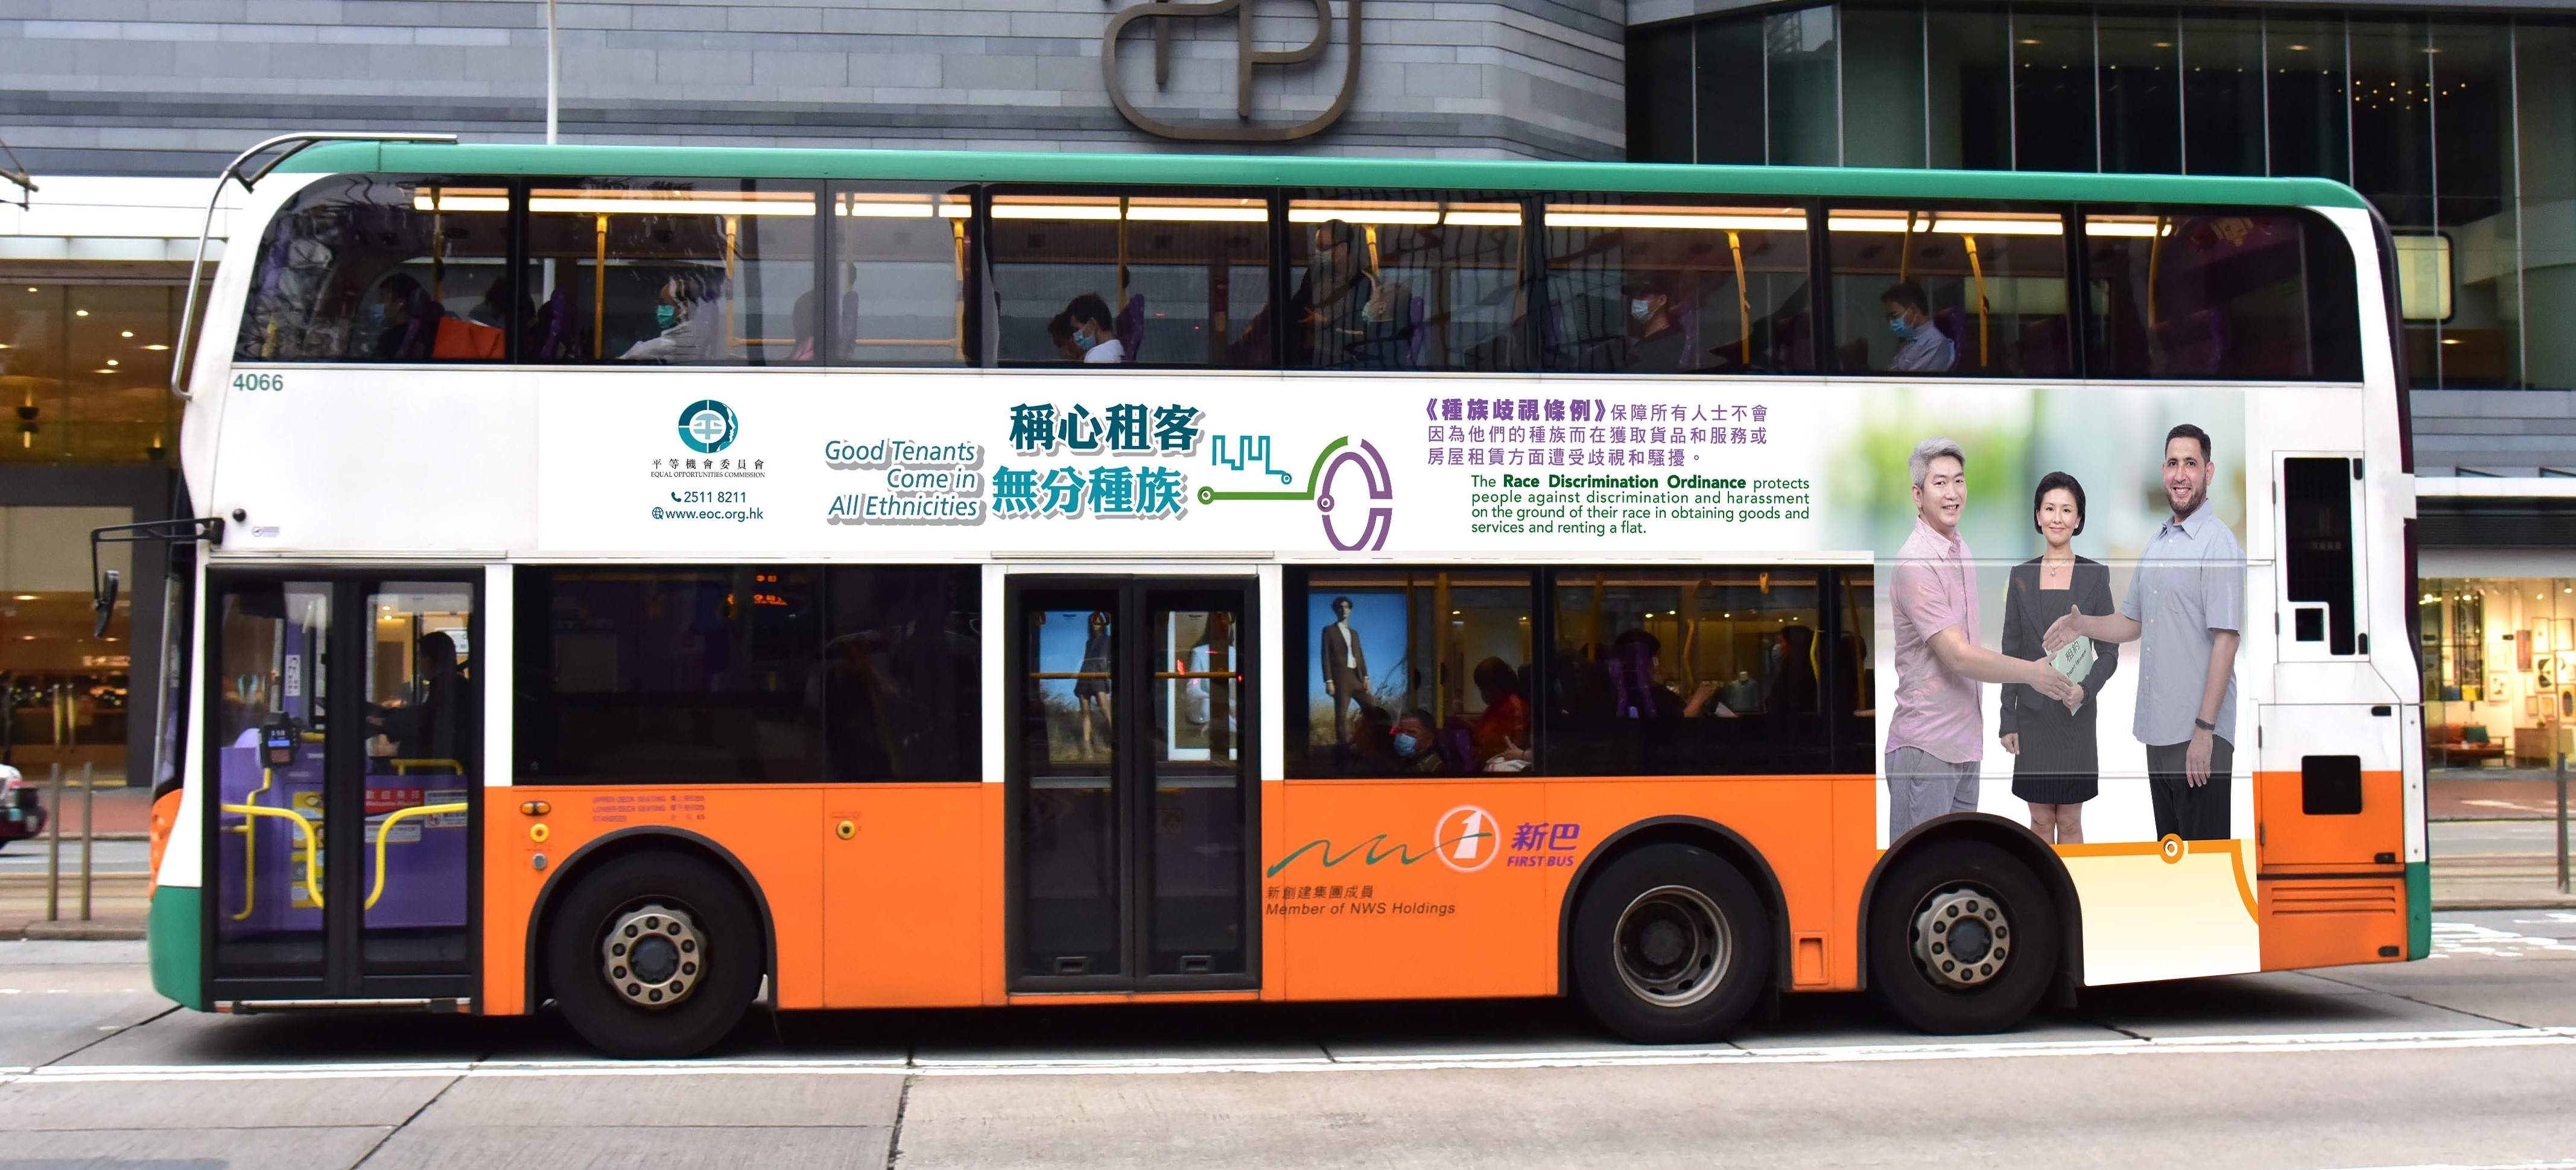 平机会推出以「称心租客　无分种族」为题的巴士车身宣传广告，以推广种族平等的物业租赁。